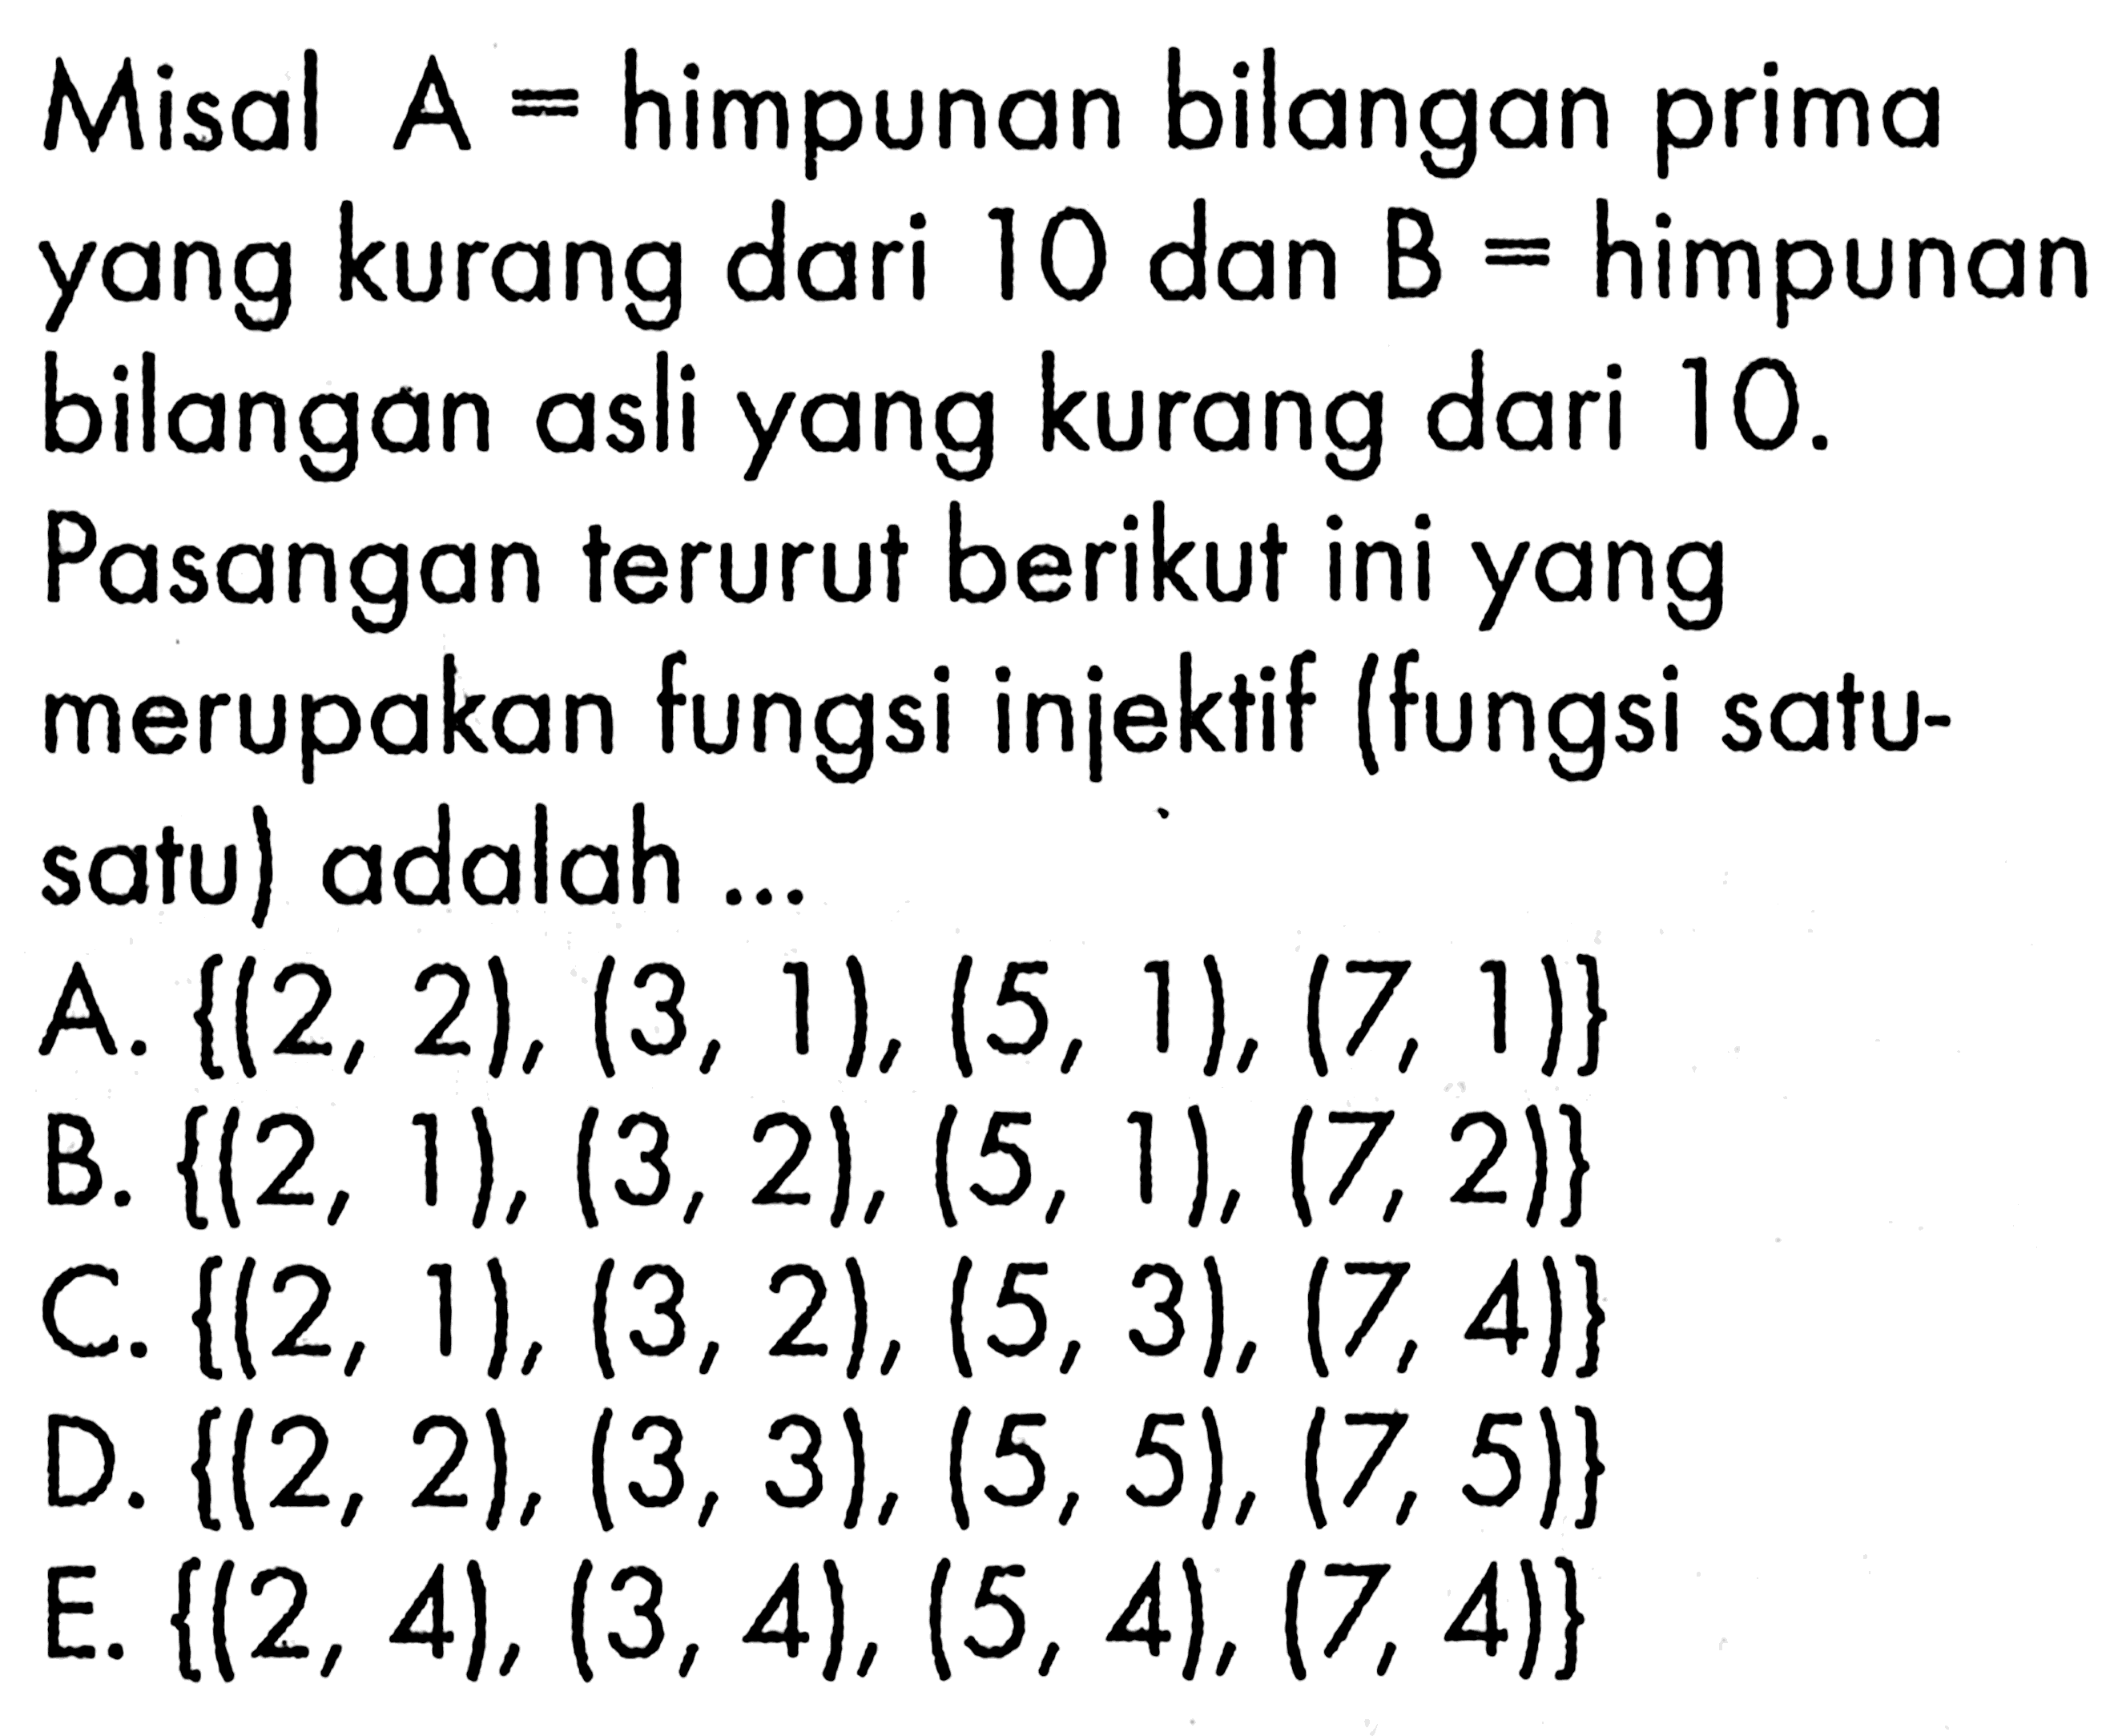 Misal  A=himpunan bilangan prima yang kurang dari 10 dan  B=himpunan bilangan asli yang kurang dari 10 . Pasangan terurut berikut ini yang merupakan fungsi injektif (fungsi satu-satu) adalah ...